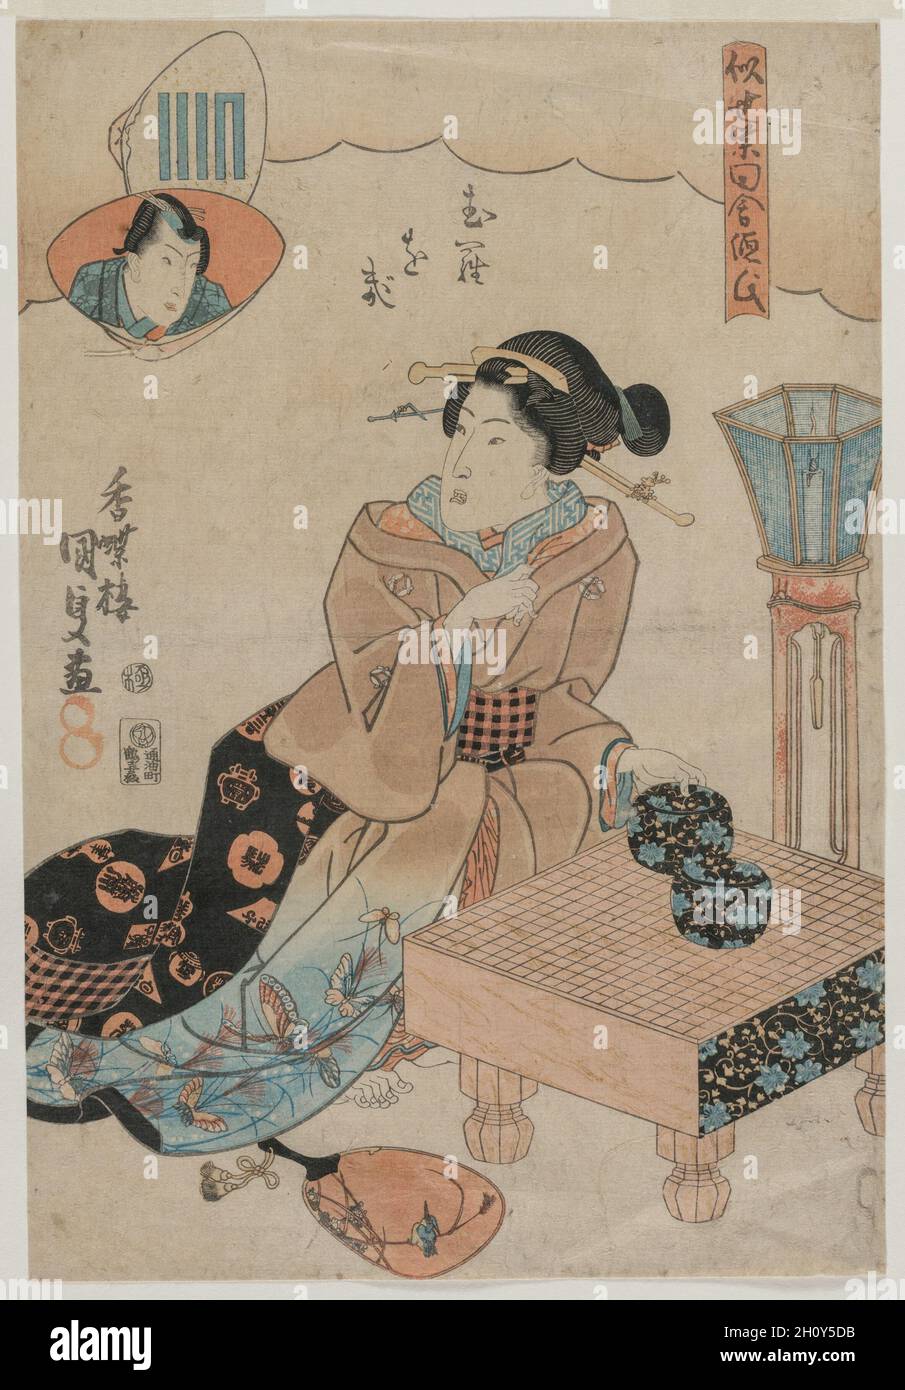 Muraogi, aus der Serie The False Murasaki's Rustic Genji (Nise Murasaki Inaka Genji), 1830er Jahre. Utagawa Kunisada (Japanisch, 1786-1865). Farbholzschnitt; Blatt: 36 x 24.8 cm (14 3/16 x 9 3/4 Zoll). Stockfoto